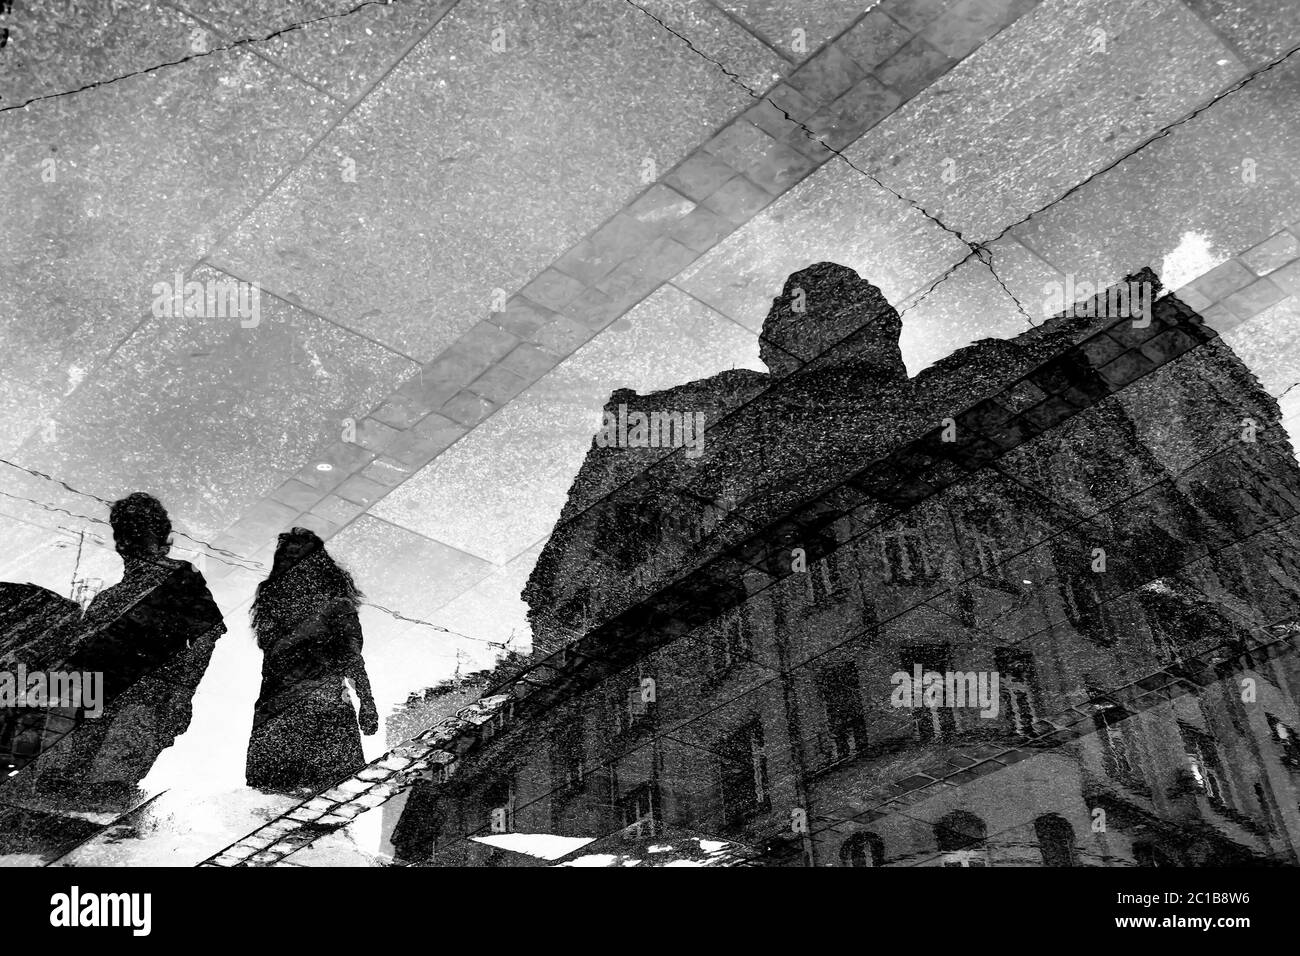 Verschwommene Spiegelschatten-Silhouetten in einer Pfütze eines neoklassizistischen Gebäudes und zwei Personen, die auf einer nassen Fußgängerzone in Schwarz und Weiß spazieren Stockfoto